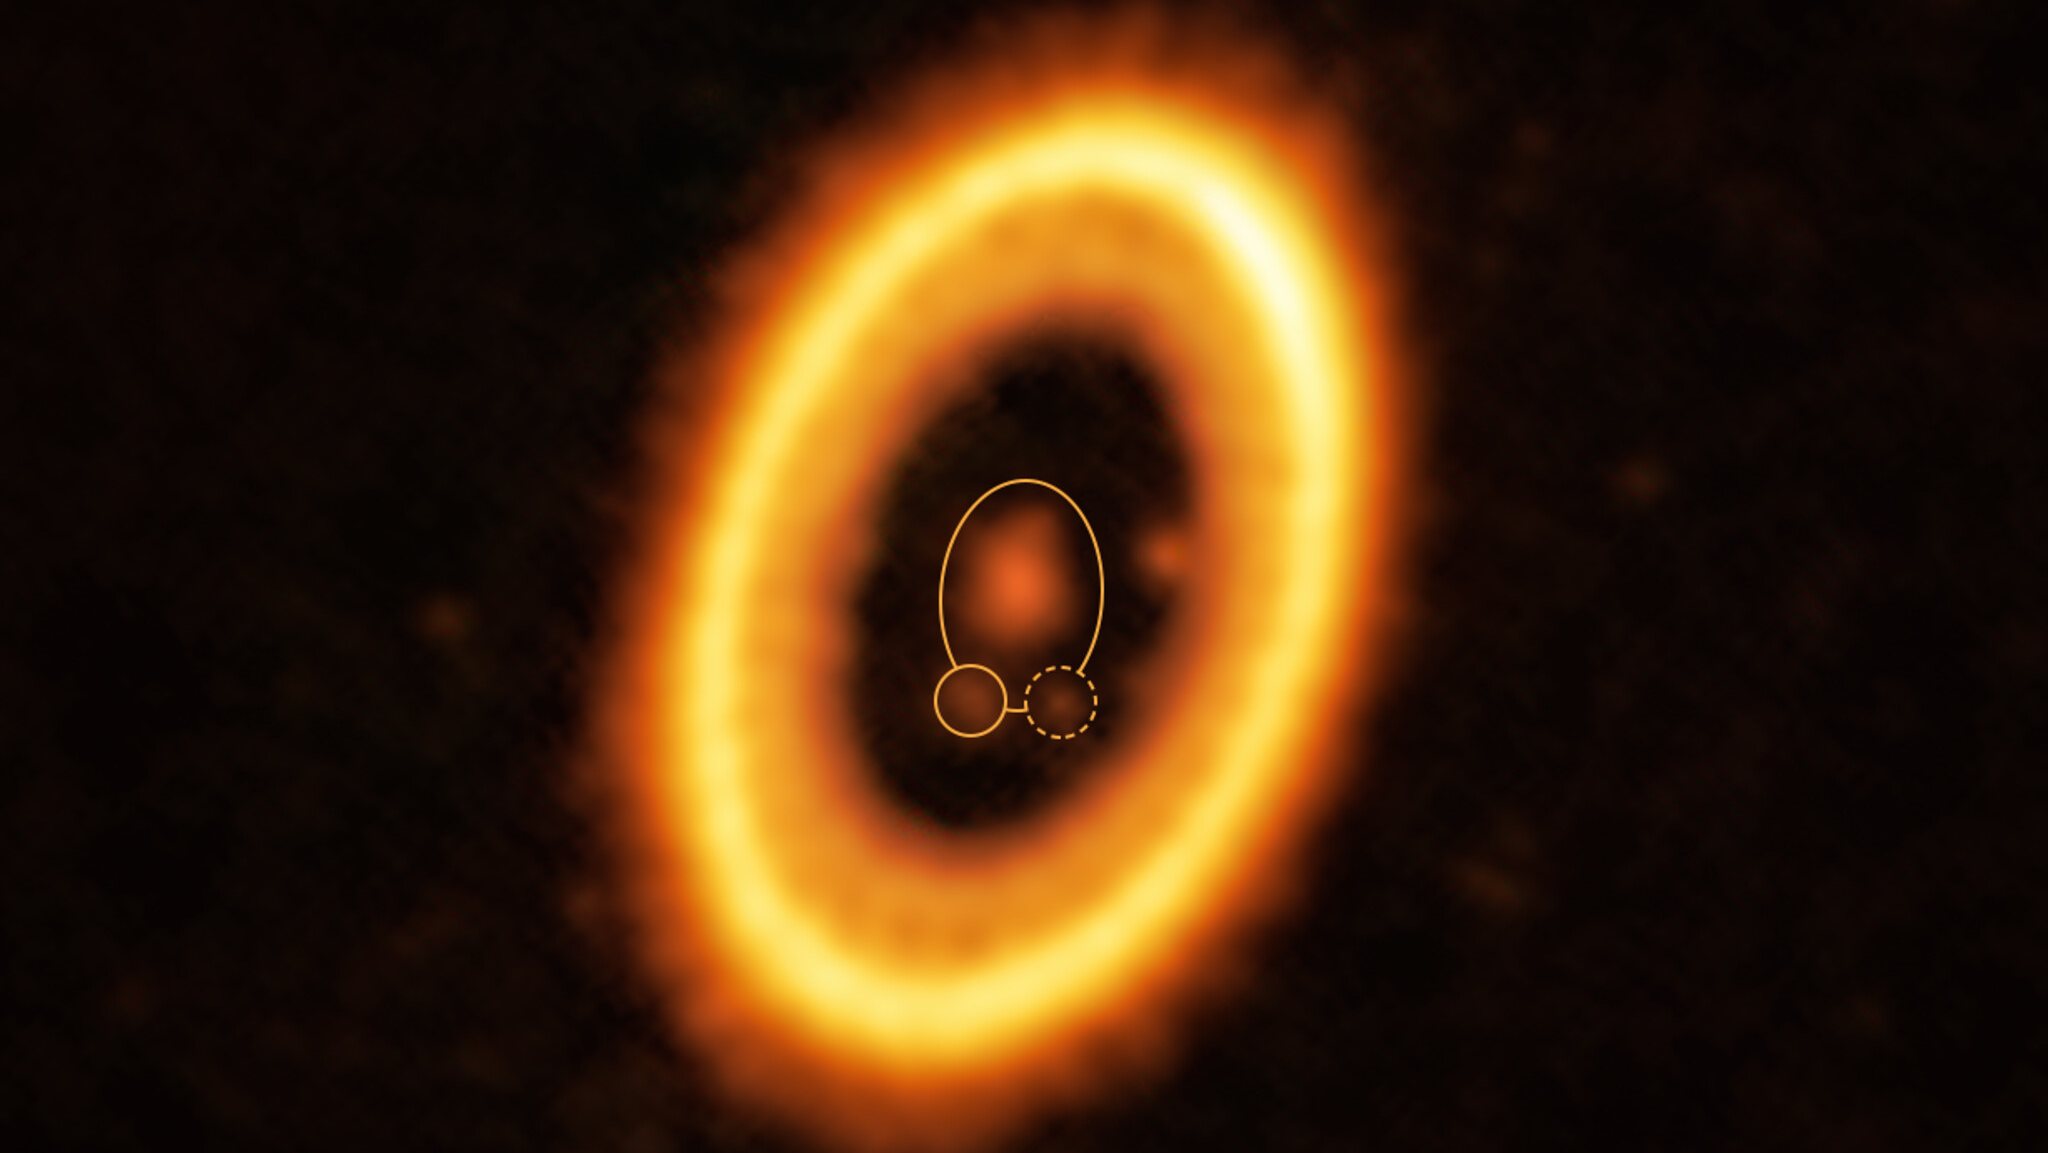 Esta imagem, obtida pelo Atacama Large Millimeter/submillimeter Array (ALMA), do qual o ESO é um parceiro, mostra o jovem sistema planetário PDS 70, situado a quase 400 anos-luz de distância da Terra. O sistema possui uma estrela no seu centro, em torno da qual orbita o planeta PDS 70 b (assinalado pelo círculo amarelo com linha sólida). Na mesma órbita de PDS 70b, indicada por uma elipse amarela, os astrónomos detectaram uma nuvem de detritos (marcada por um círculo amarelo a tracejado) que poderá ser formada pelos blocos constituintes de um novo planeta ou os restos de um planeta já formado. A estrutura em forma de anel que domina a imagem trata-se de um disco circumstelar de material, a partir do qual se estão a formar planetas. Há ainda outro planeta neste sistema: PDS 70c, que podemos ver à 3 horas junto ao interior do disco.